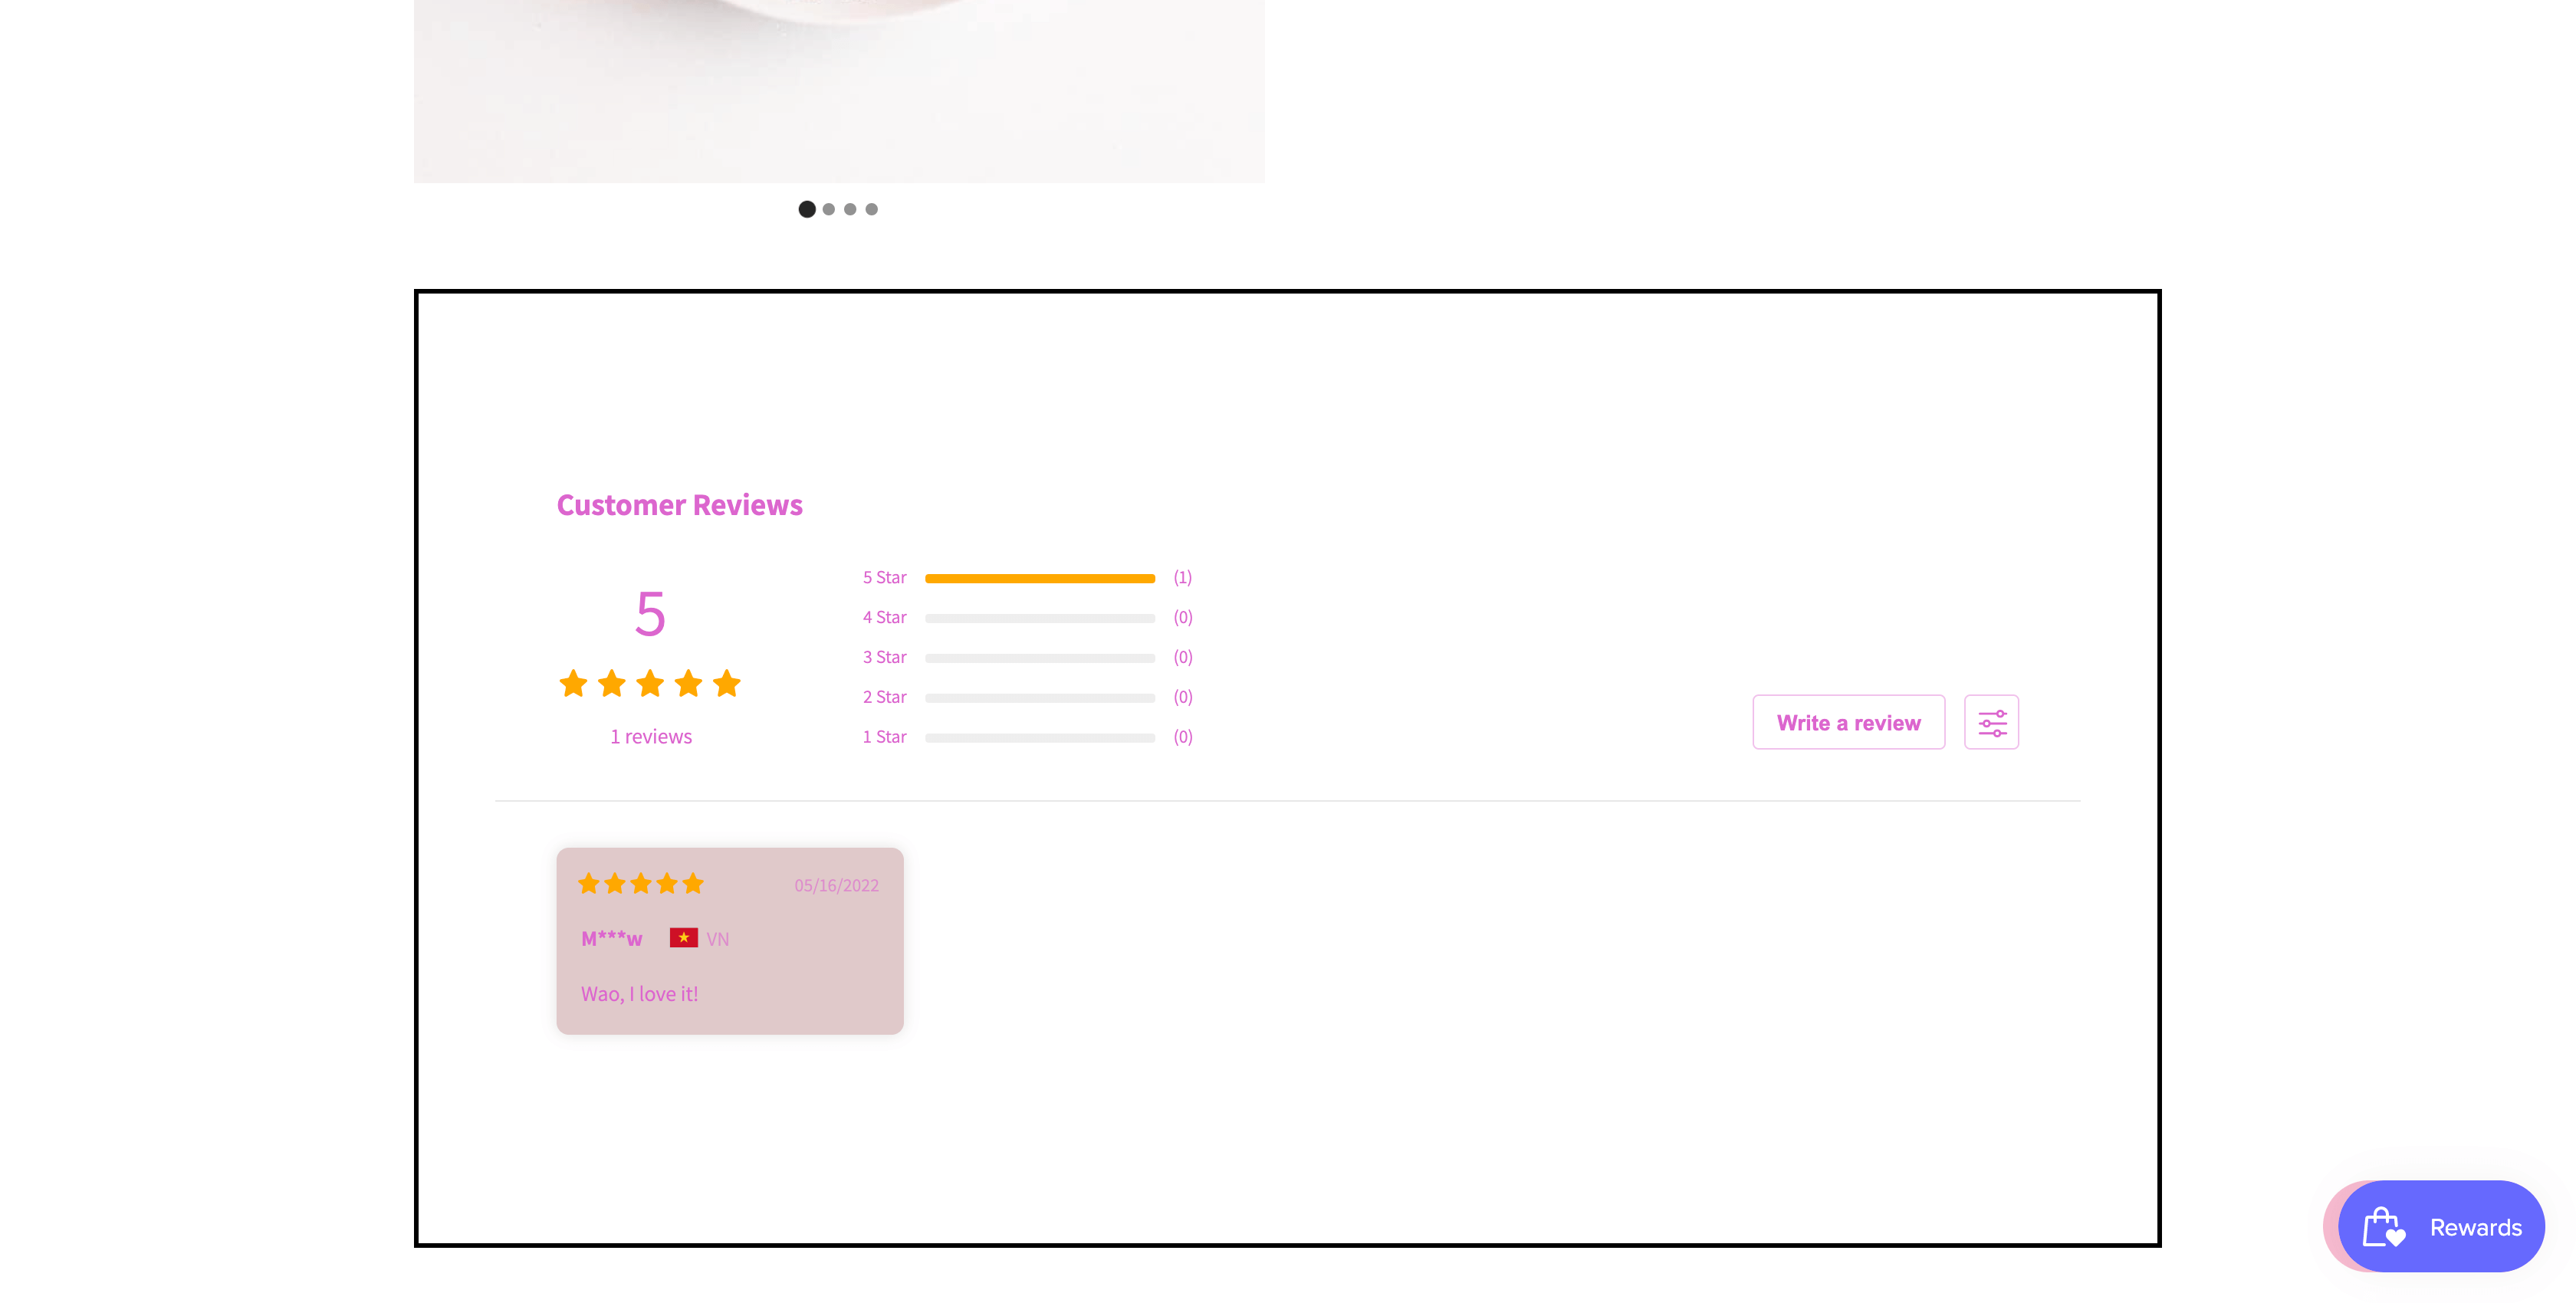 VS Ali Reviews - Product Reviews element